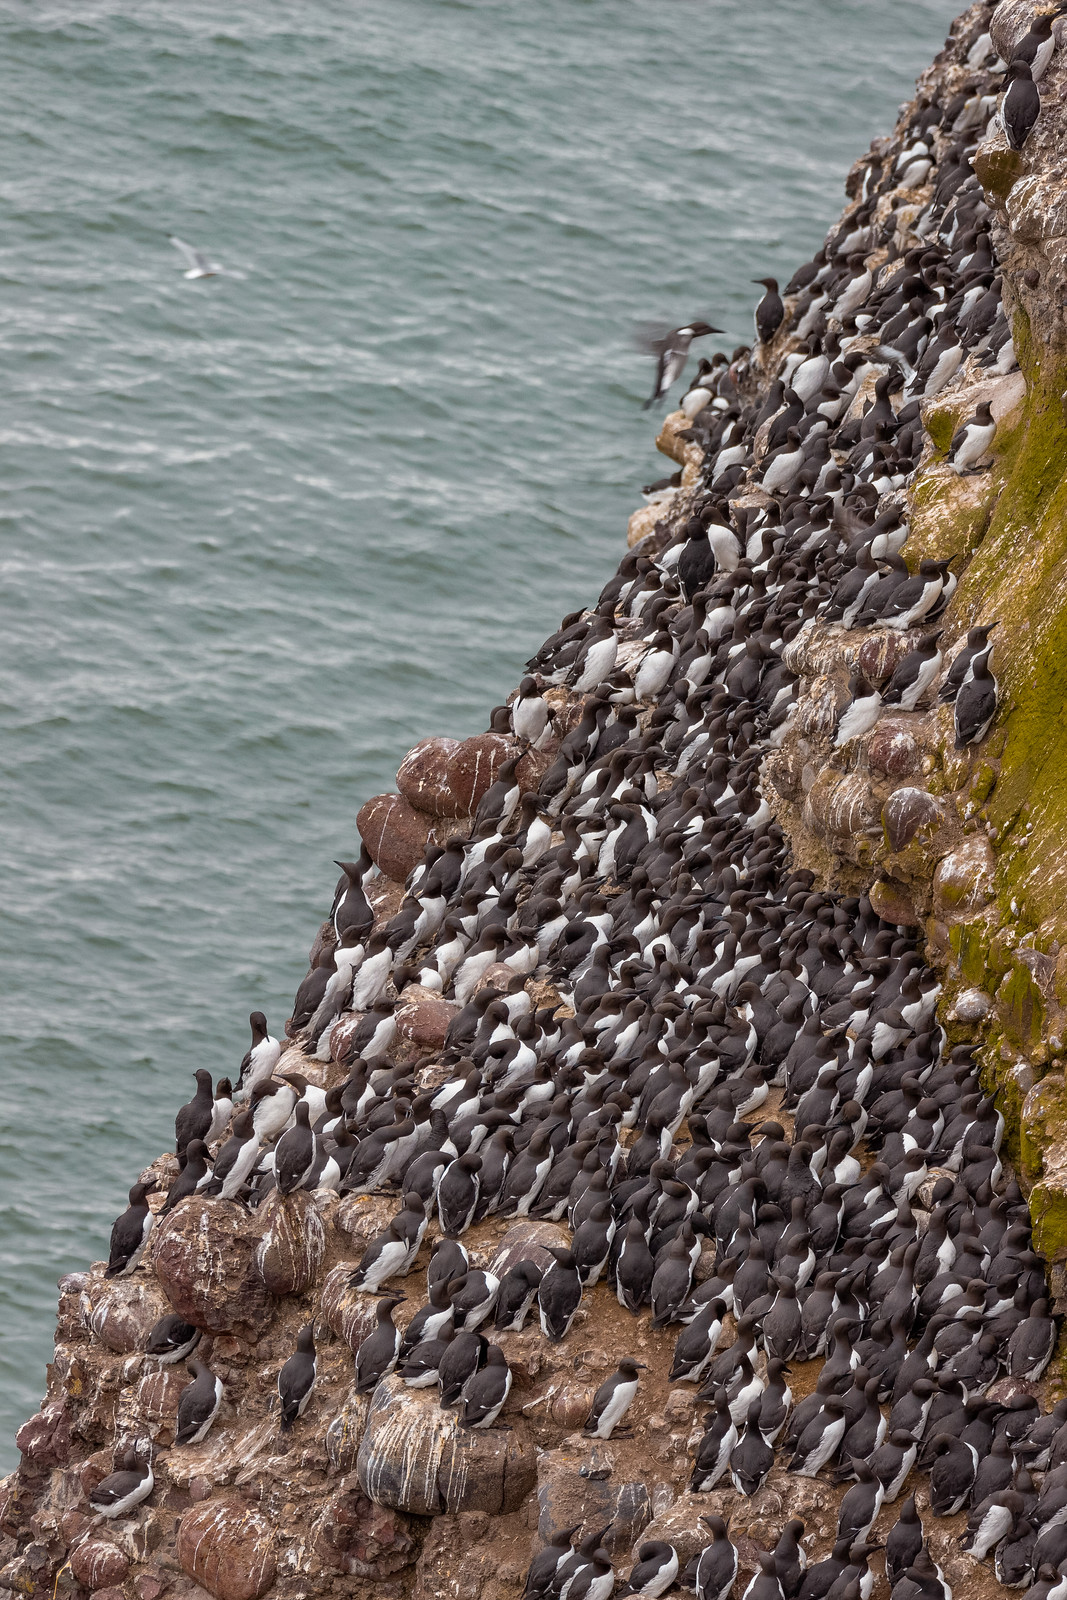 Hundreds of guillemots on the cliffs at RSPB Fowlsheugh, Aberdeenshire.